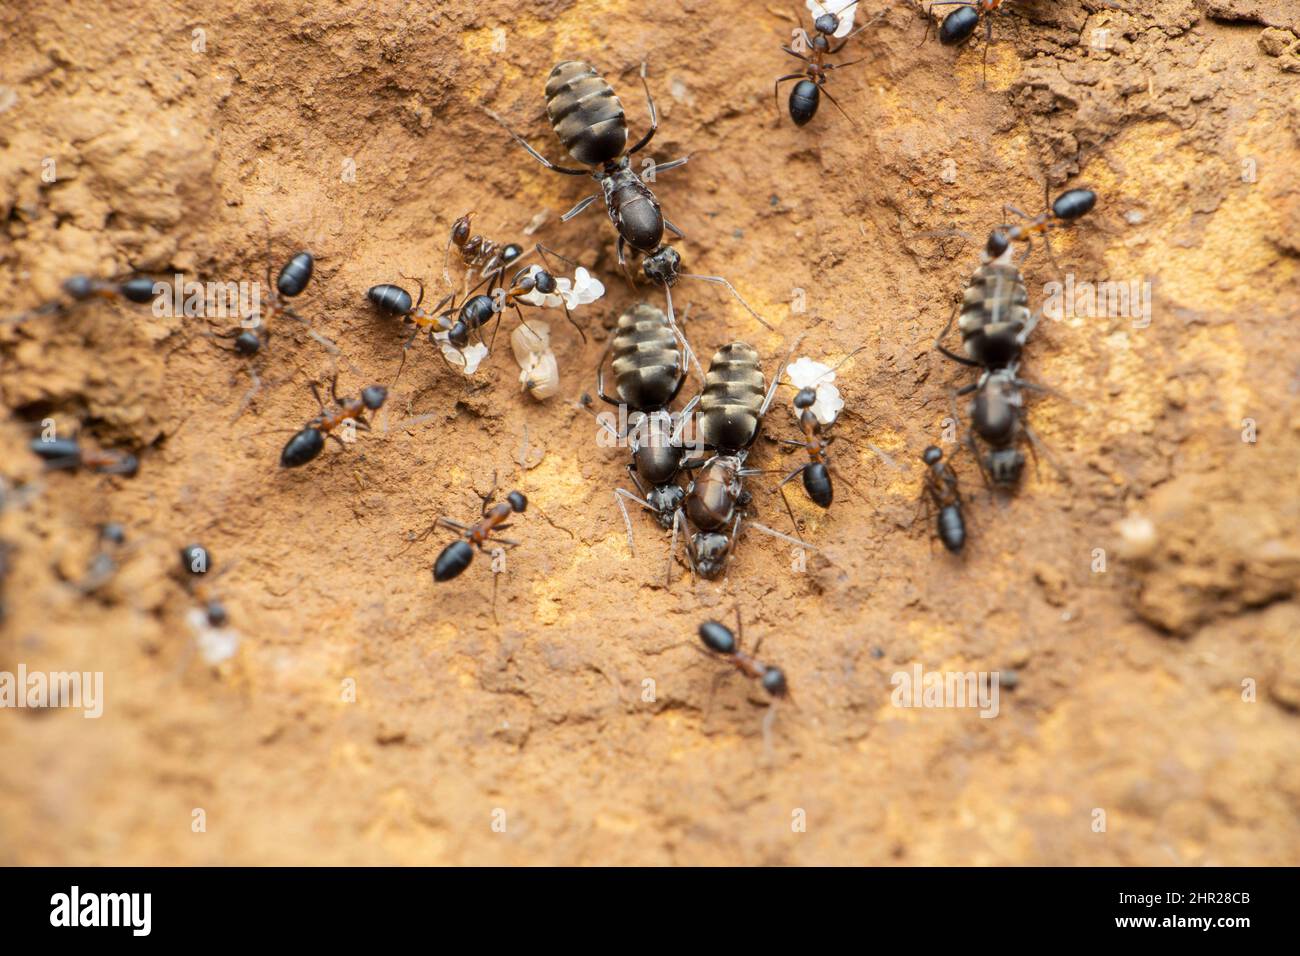 Queen jungle ant ant worker ants, Satara, Maharashtra, India Stock Photo